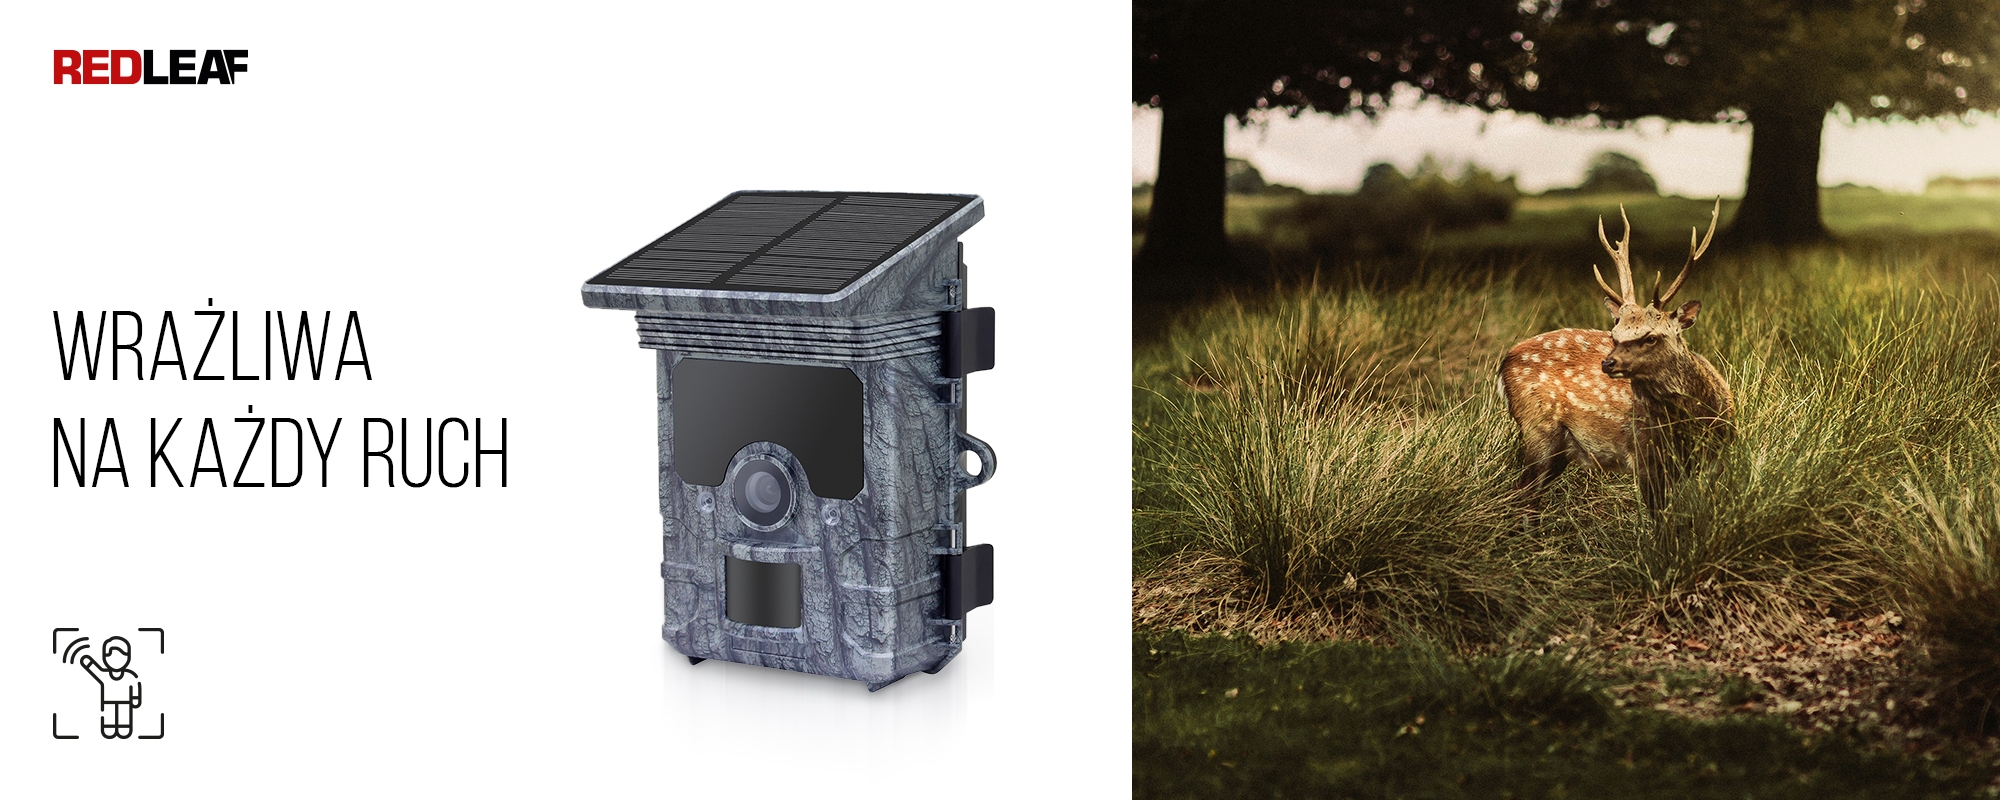 Kamera obserwacyjna z panelem słonecznym Redleaf RD7000 WiFi oraz rogacz ukrywający się w trawie na tle drzew